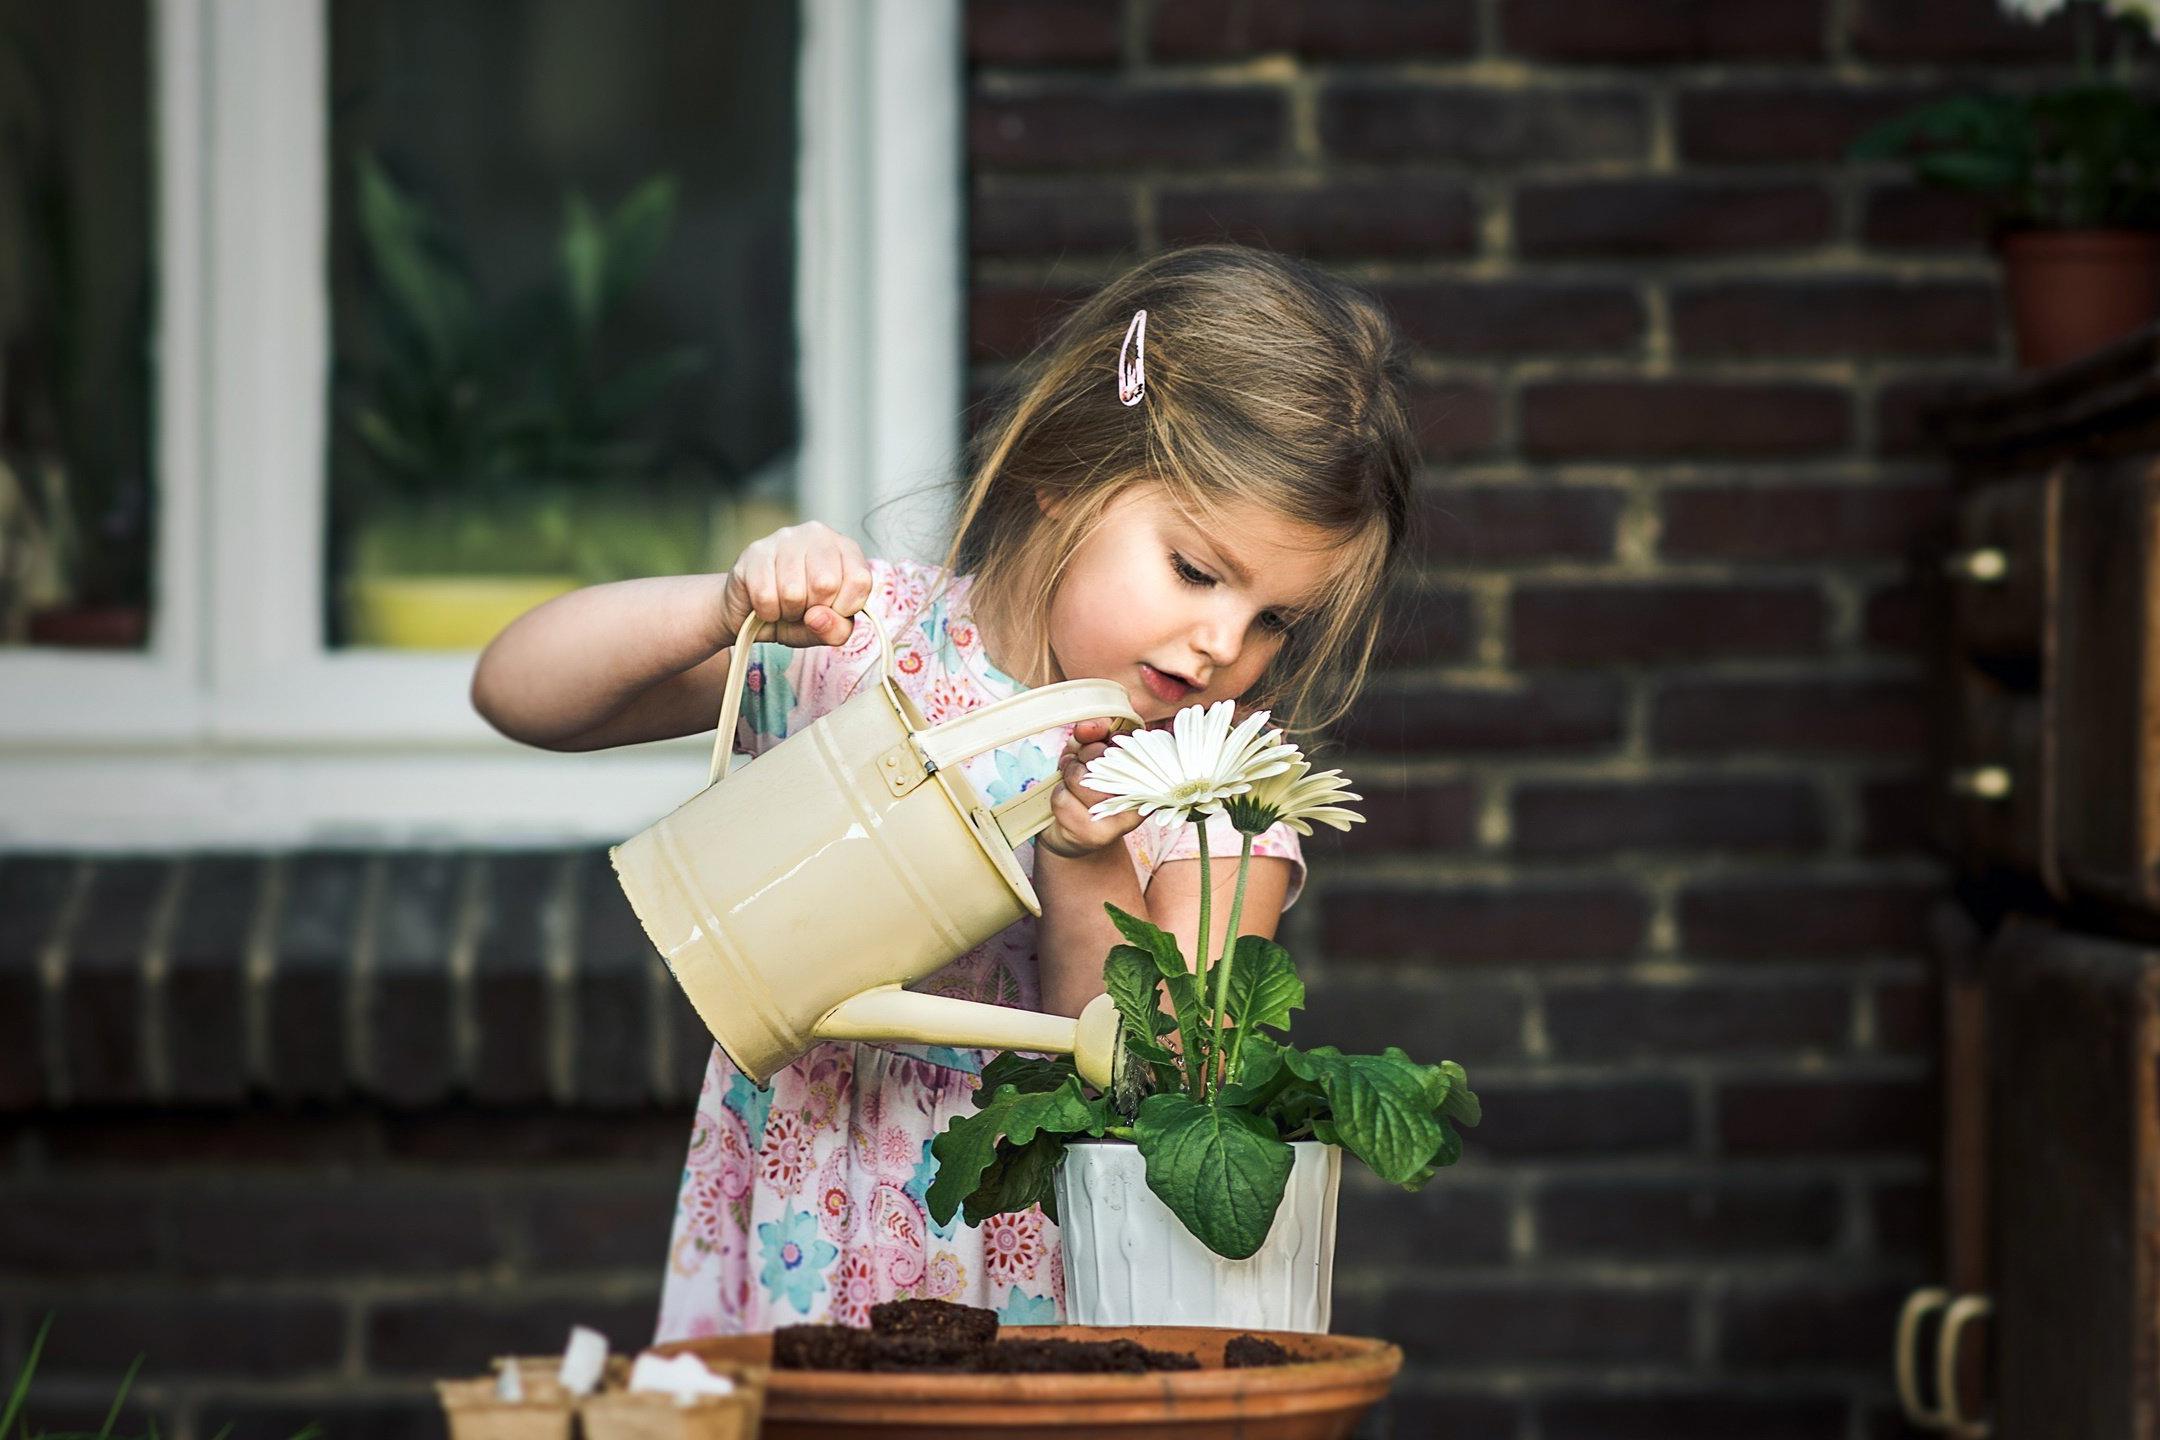 Девочка поливает цветы